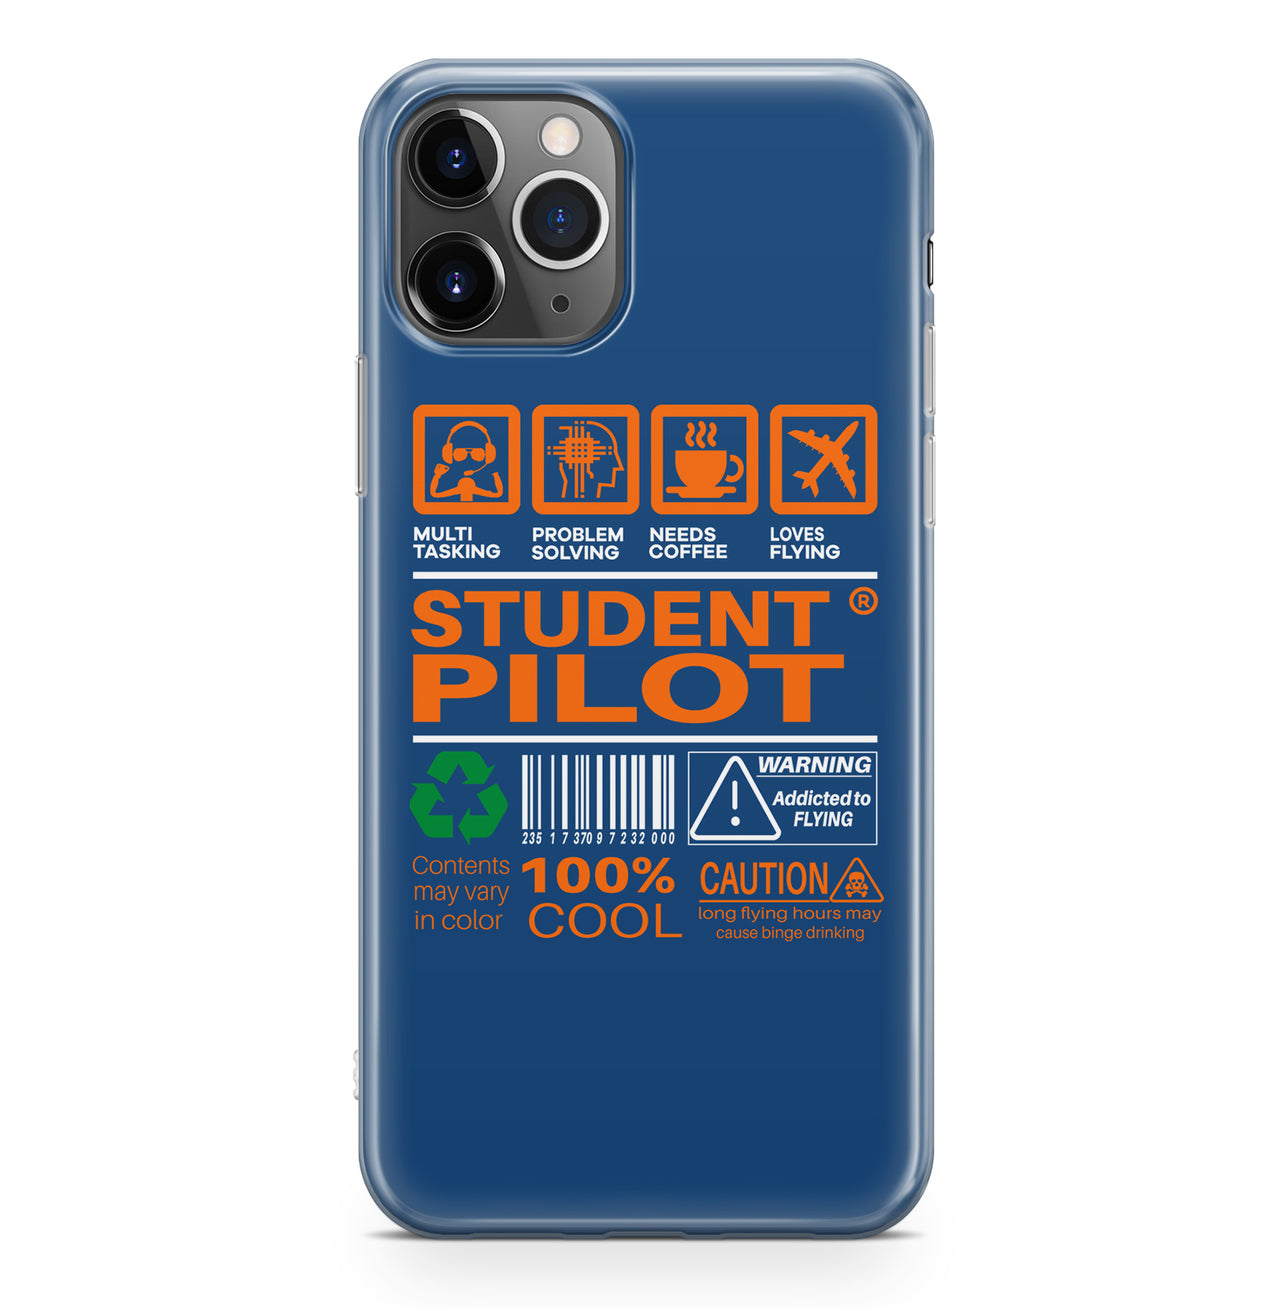 Student Pilot Label Designed iPhone Cases